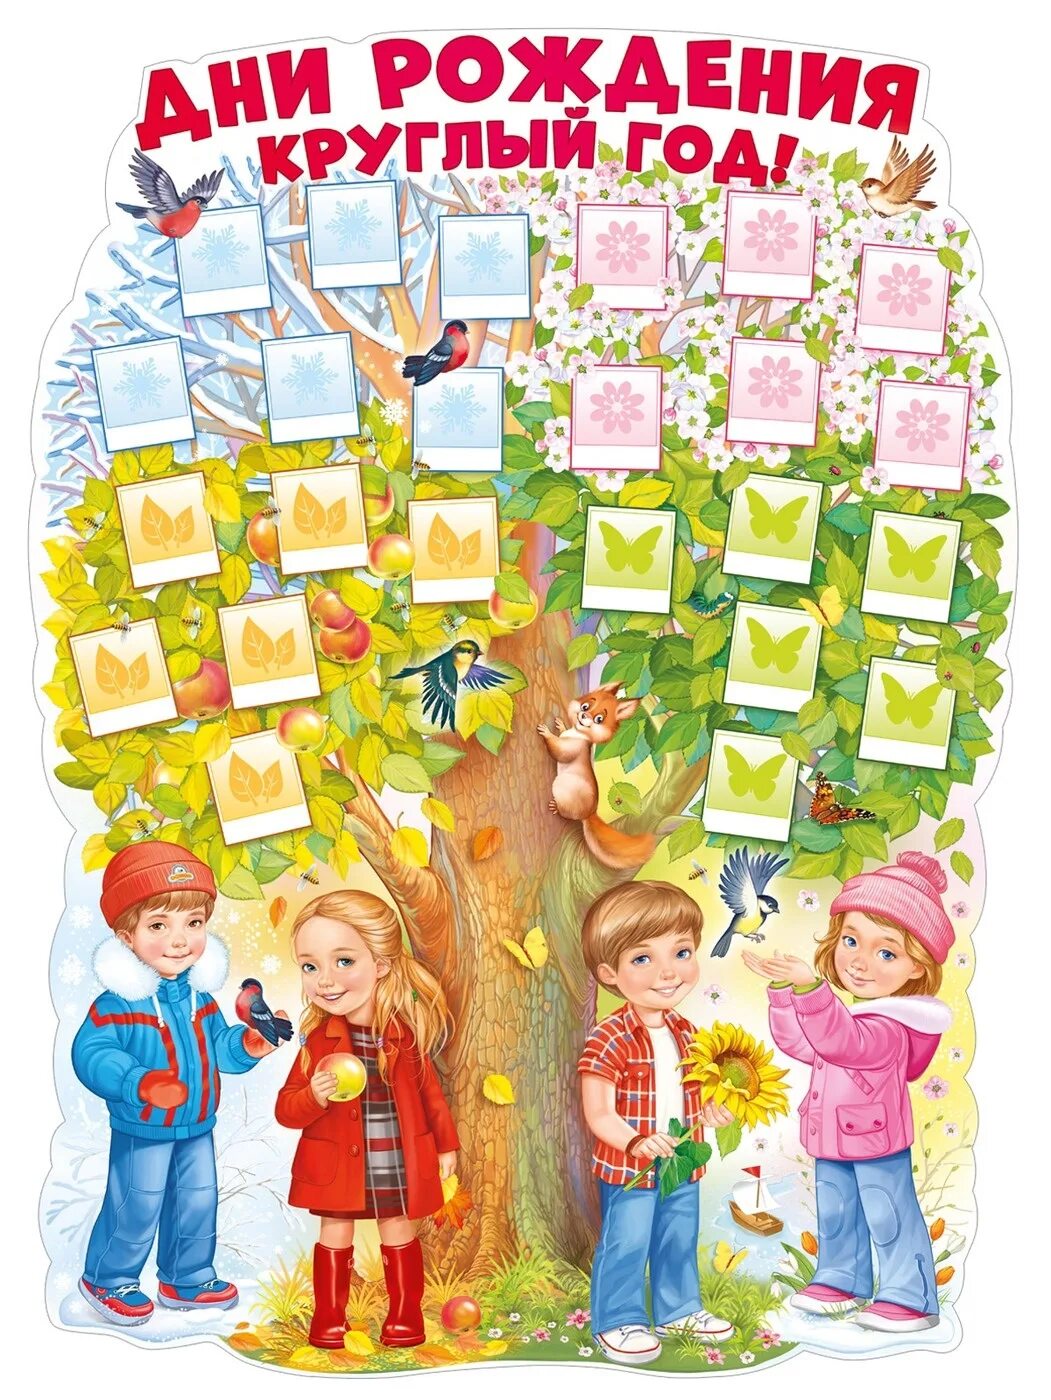 Плакат дни рождения круглый год. Плакат дней рождений в саду. Дерево именинников в детском саду. День именинника плакат для детского сада.